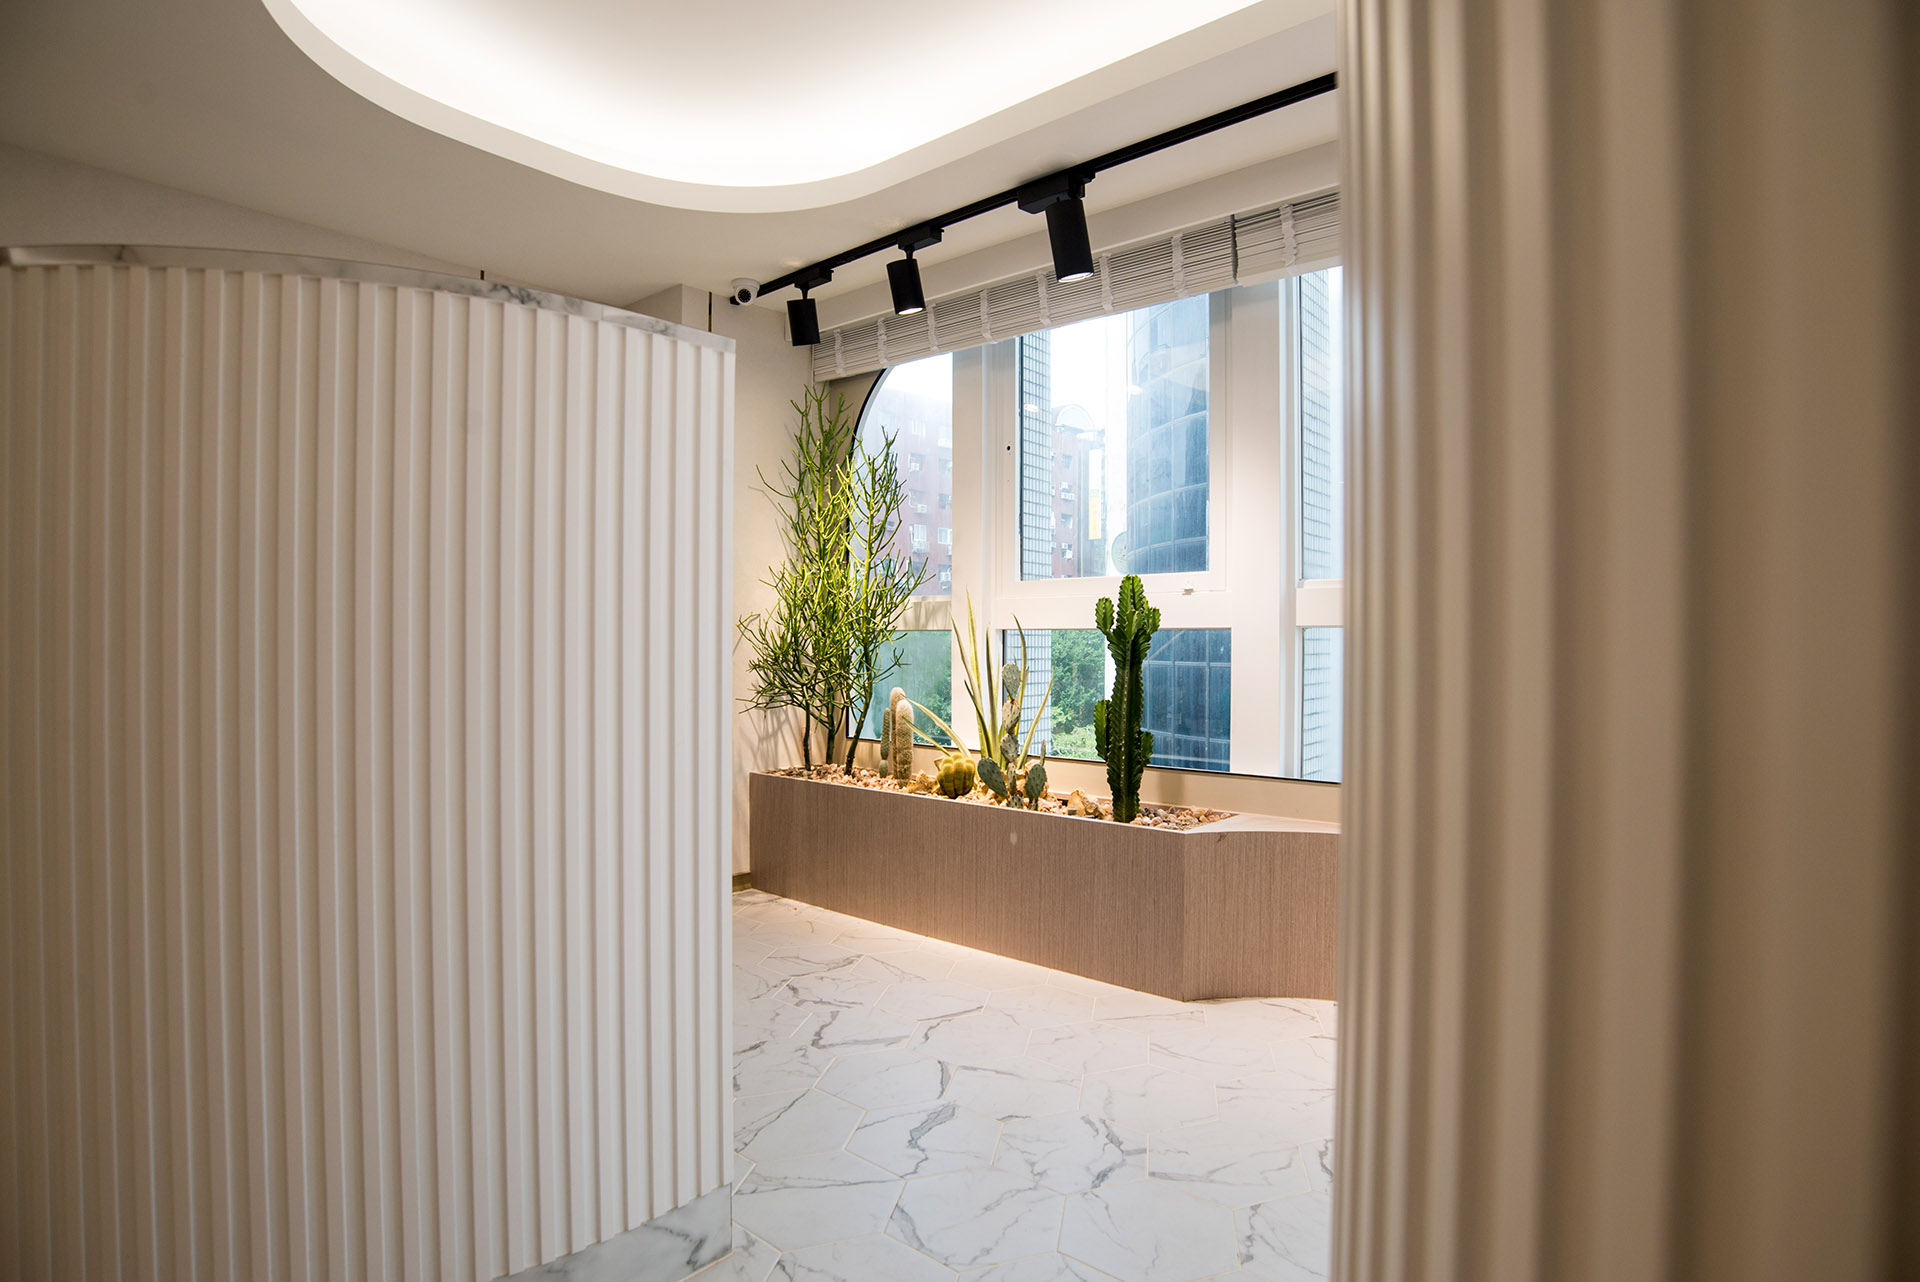 公司、辦公室植物造景設計 搭起創新思考的區域 0907 台北東區室內植物造景 9